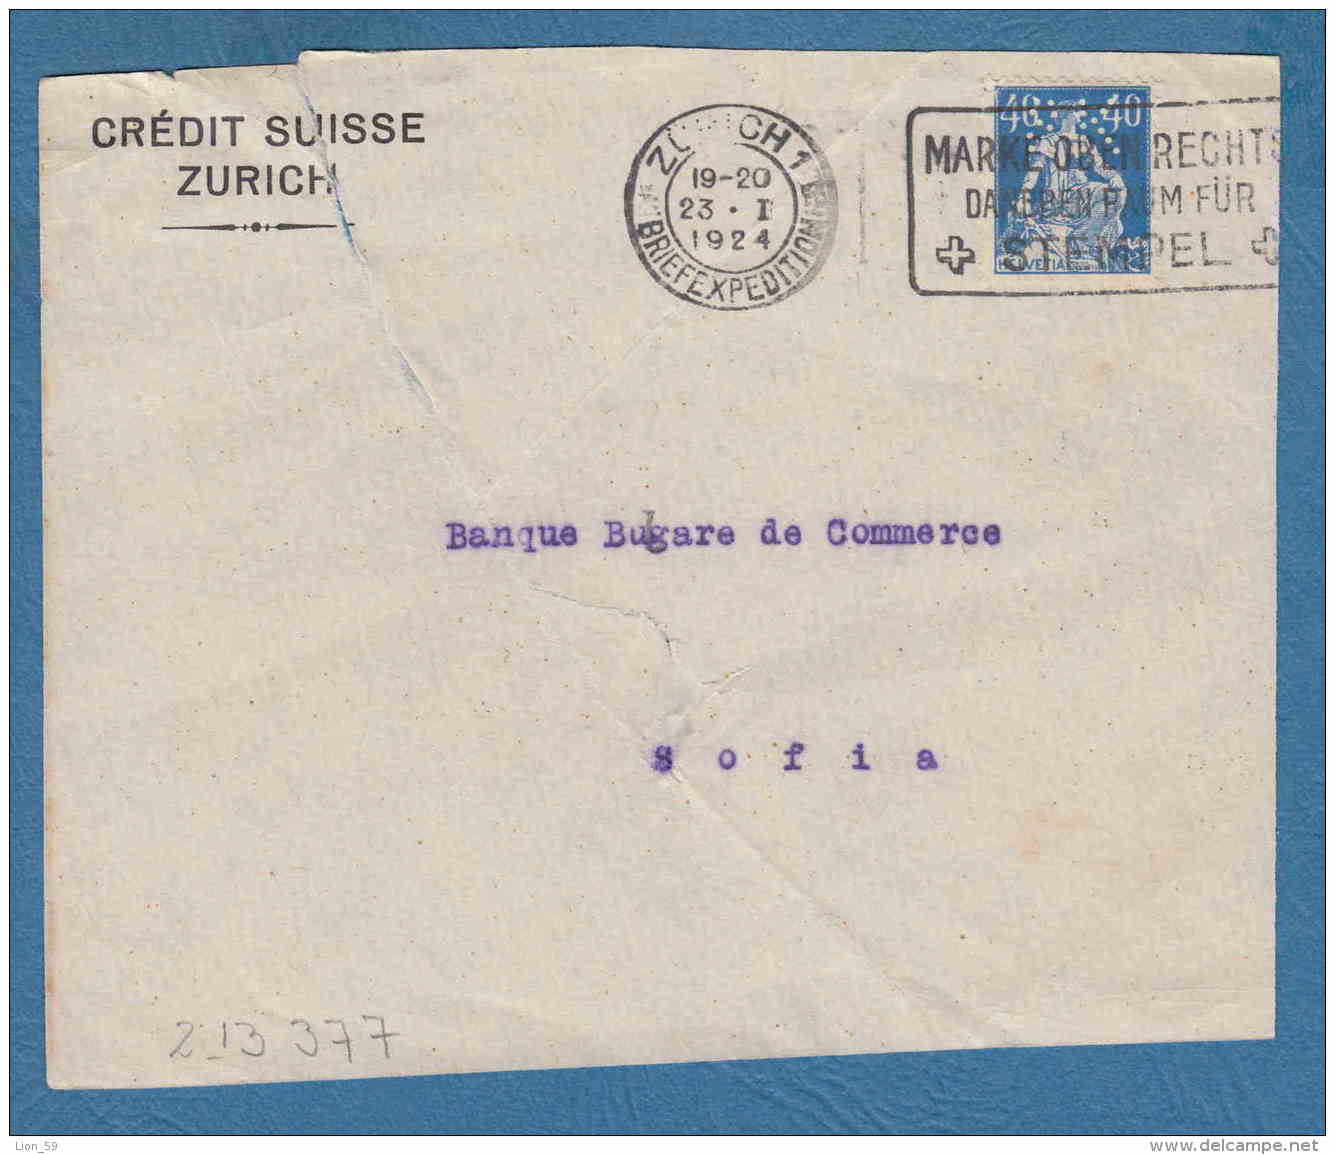 213377 / 1924 - 40 C. - CREDIT SUISSE ZURICH - Perfin Perfores Perforiert Gezähnt Perforati Switzerland Suisse Schweiz - Perfins